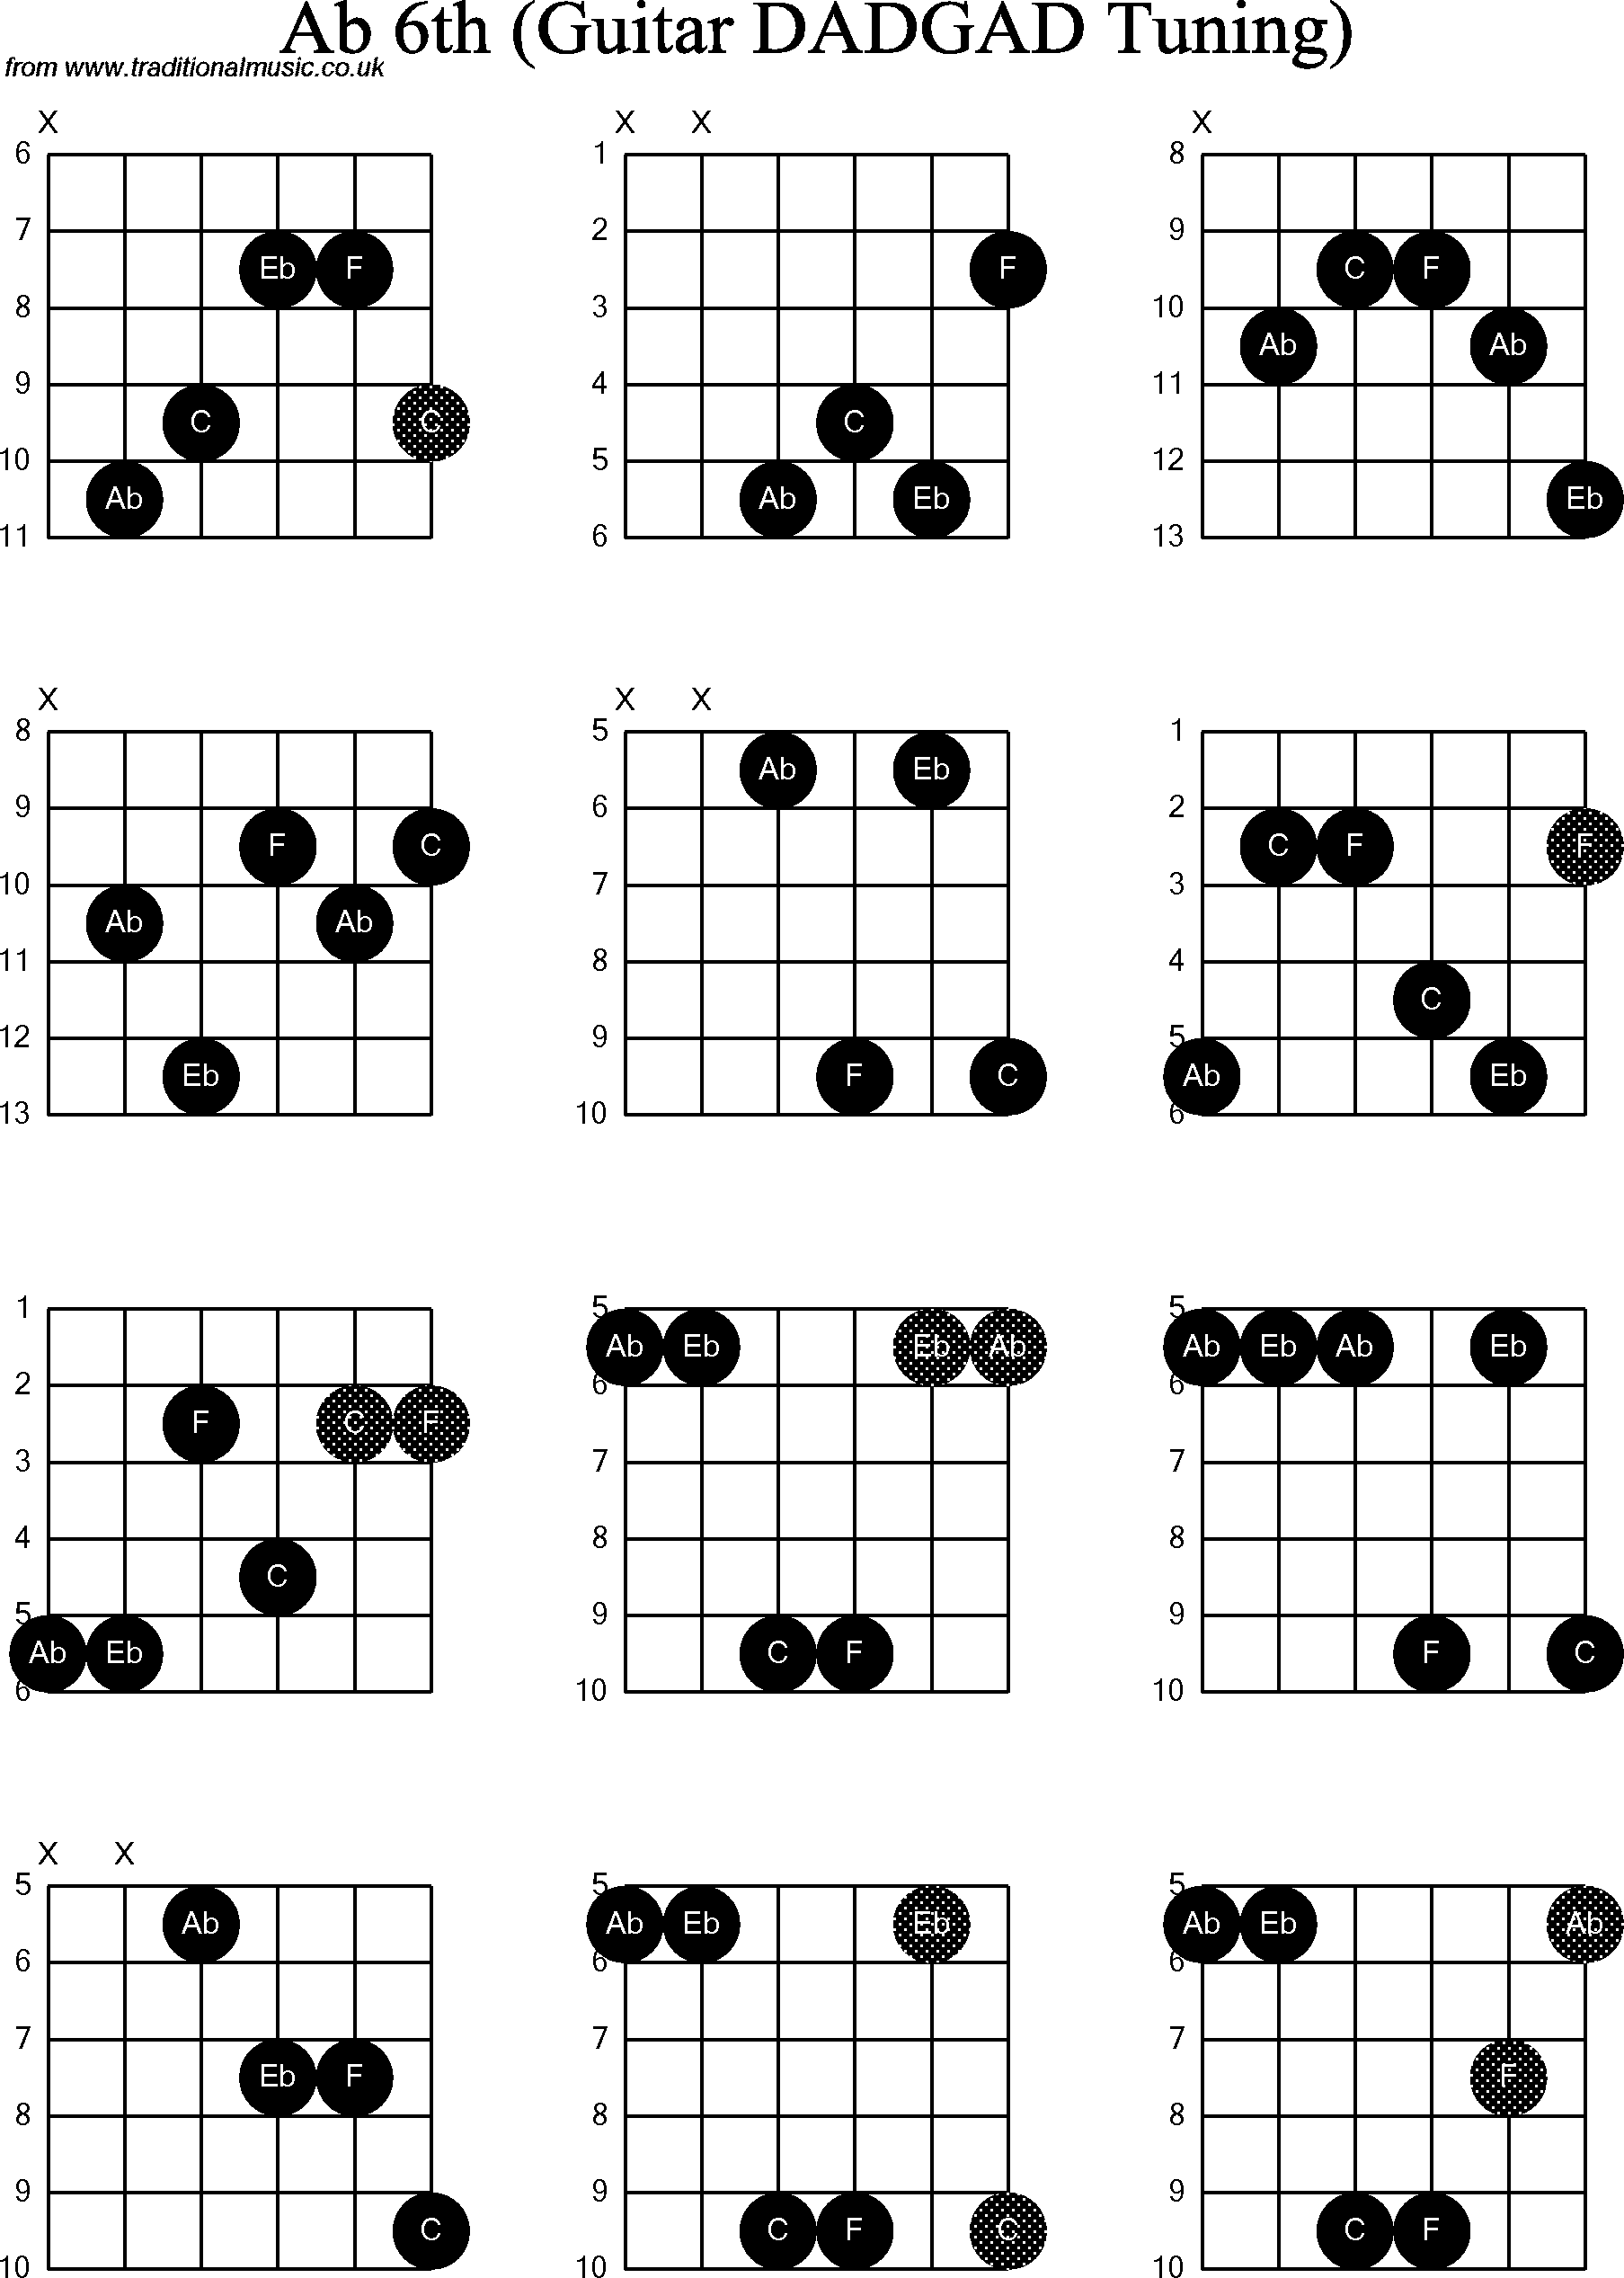 Chord Diagrams for D Modal Guitar(DADGAD), Ab6th